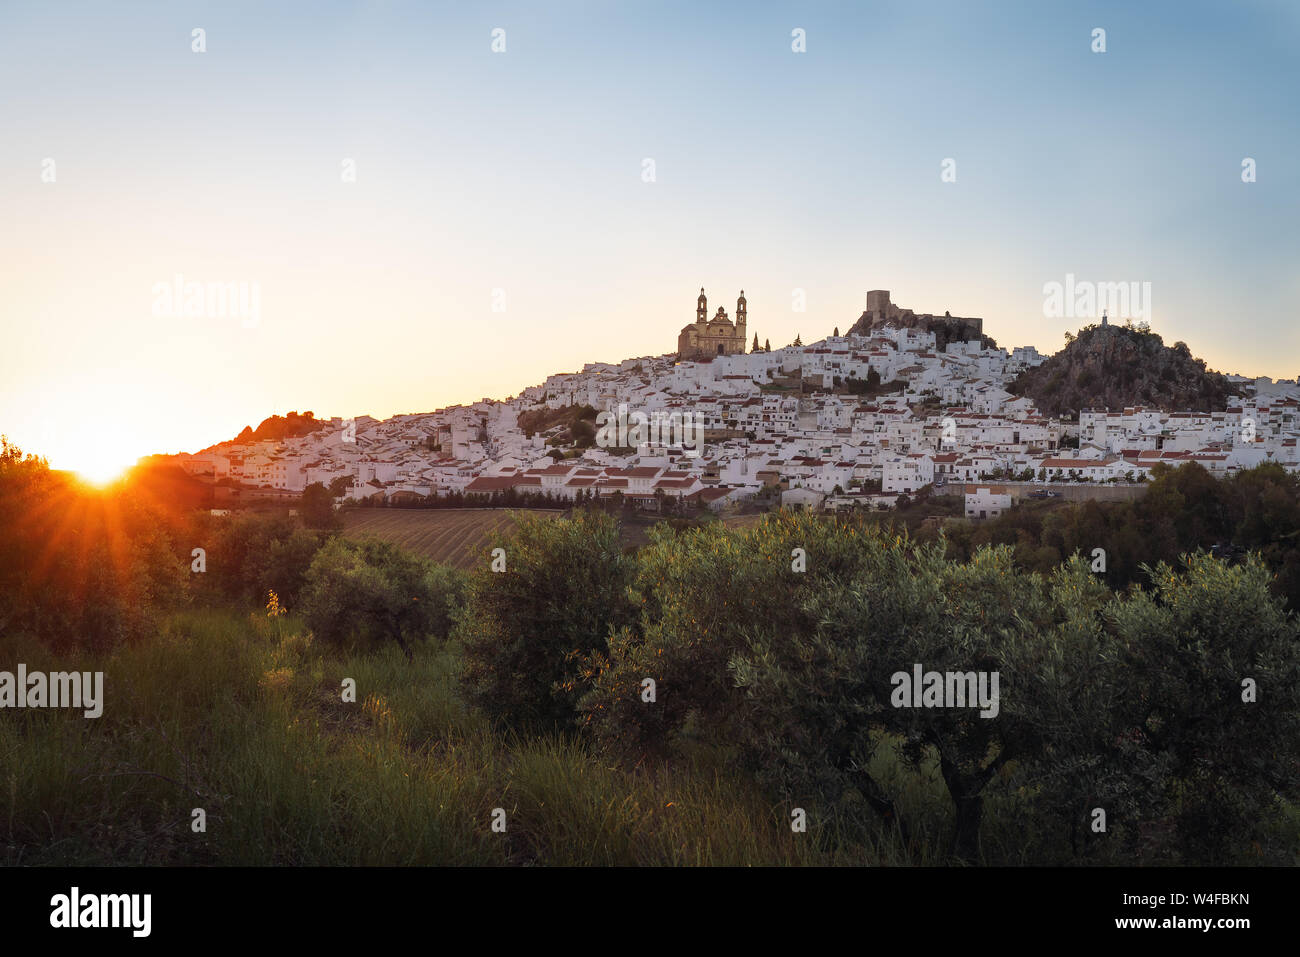 Olvera Stadt mit Burg und Dom bei Sonnenuntergang - Olvera, Provinz Cadiz, Andalusien, Spanien Stockfoto